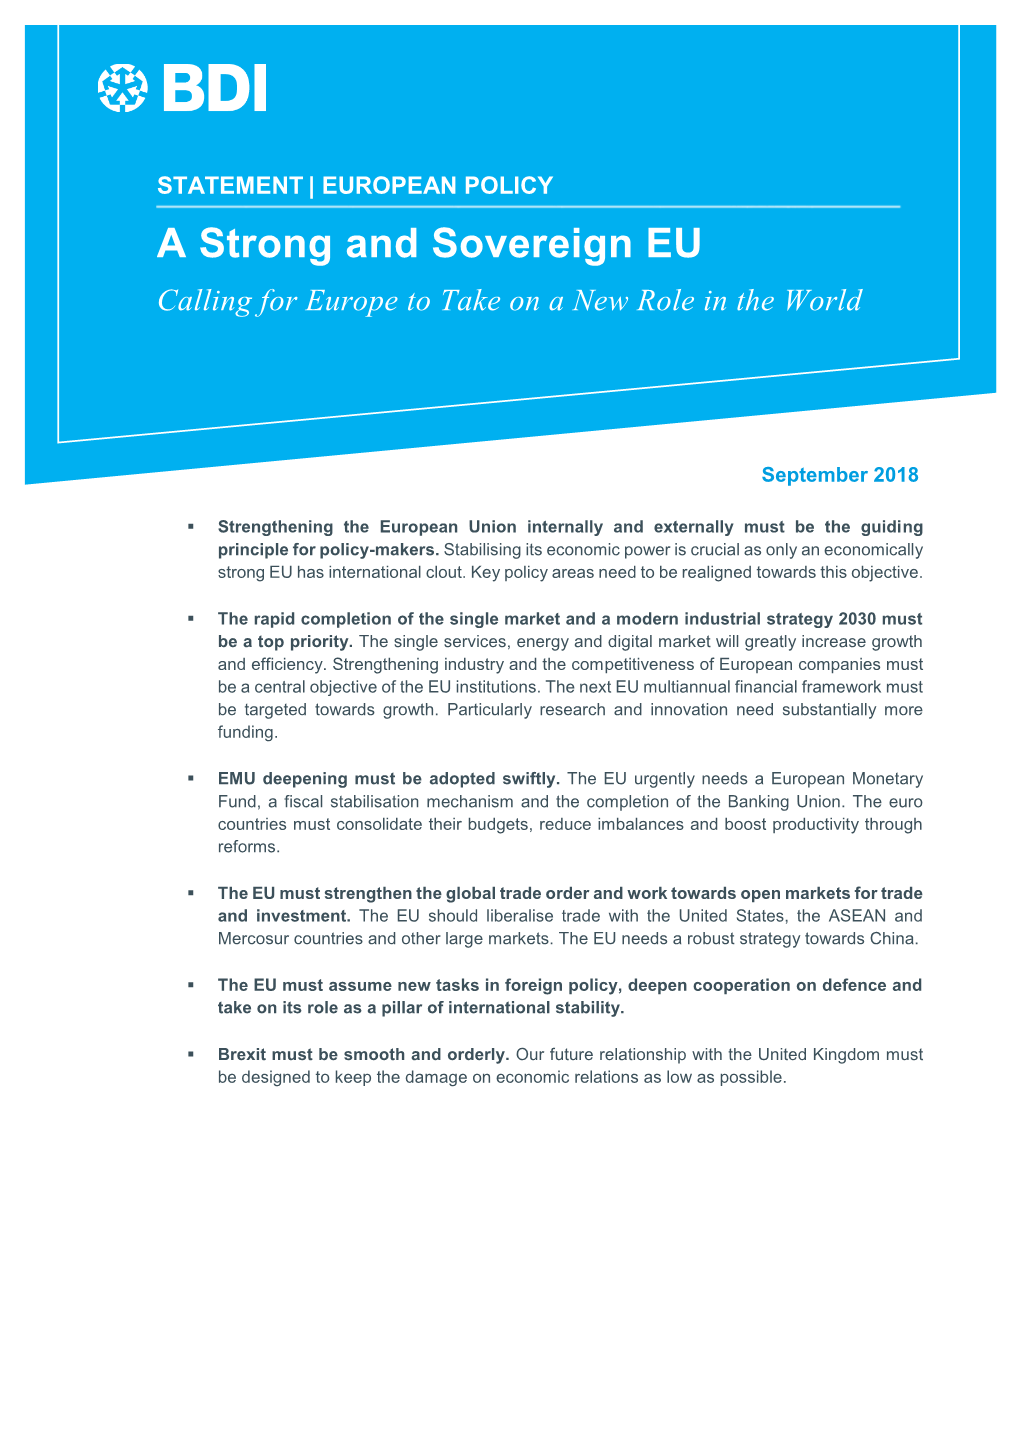 A Strong and Sovereign EU